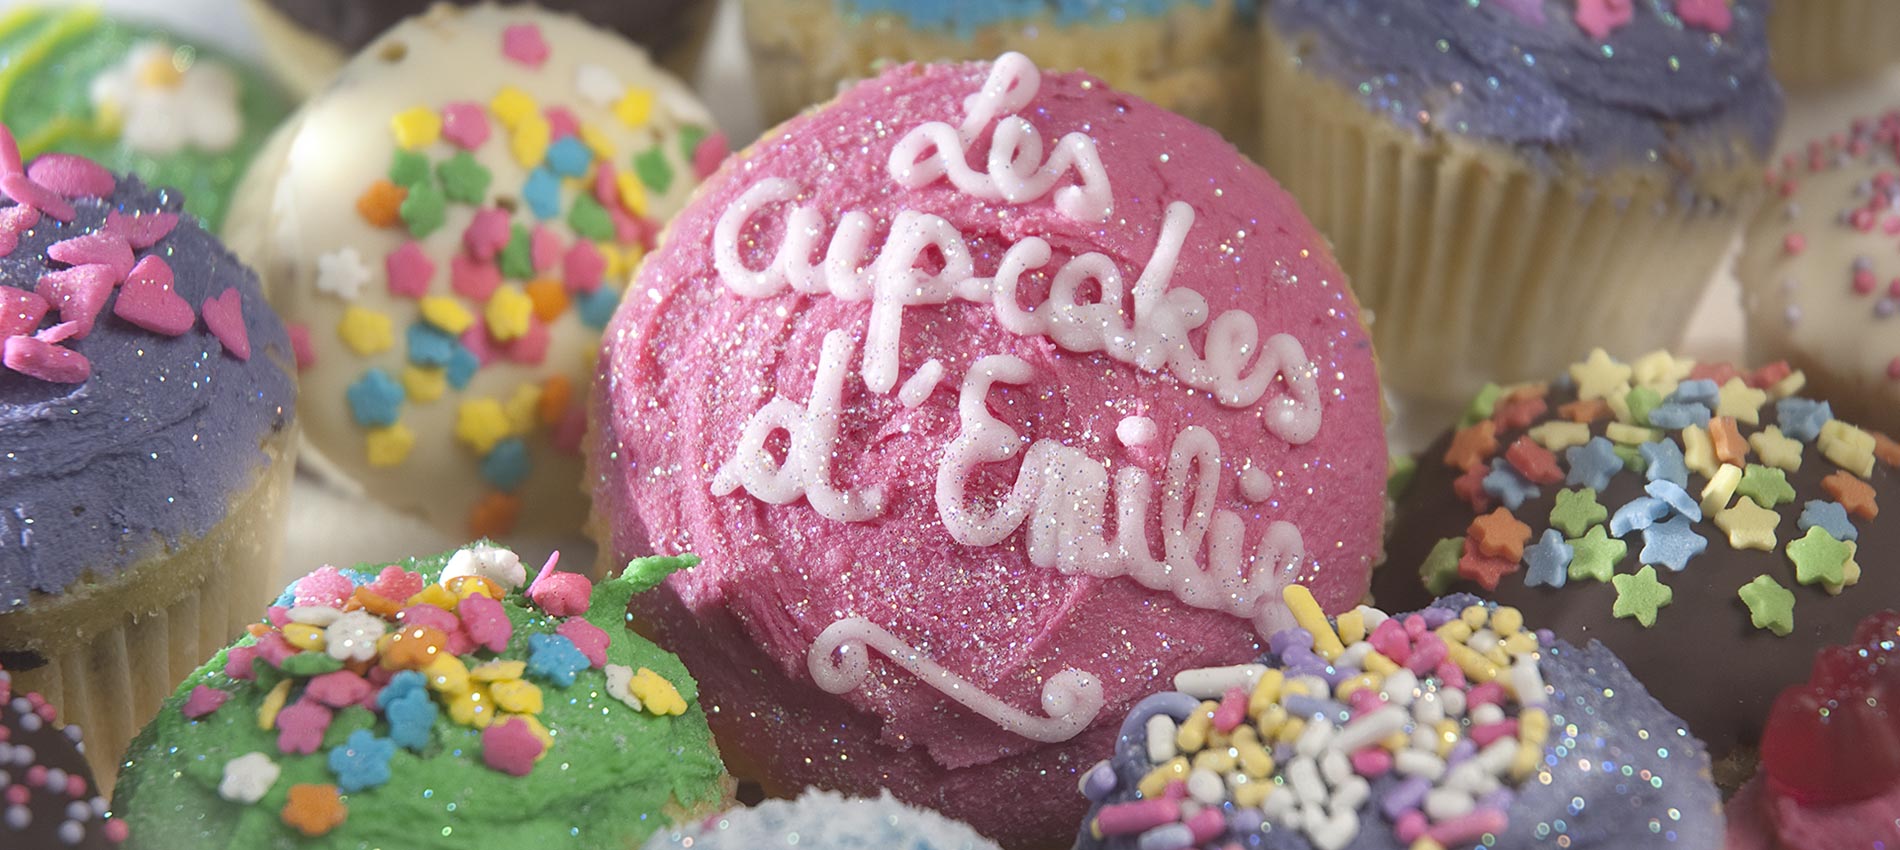 Thèmes personnalisés &mdash; Les Cupcakes d'Emilie